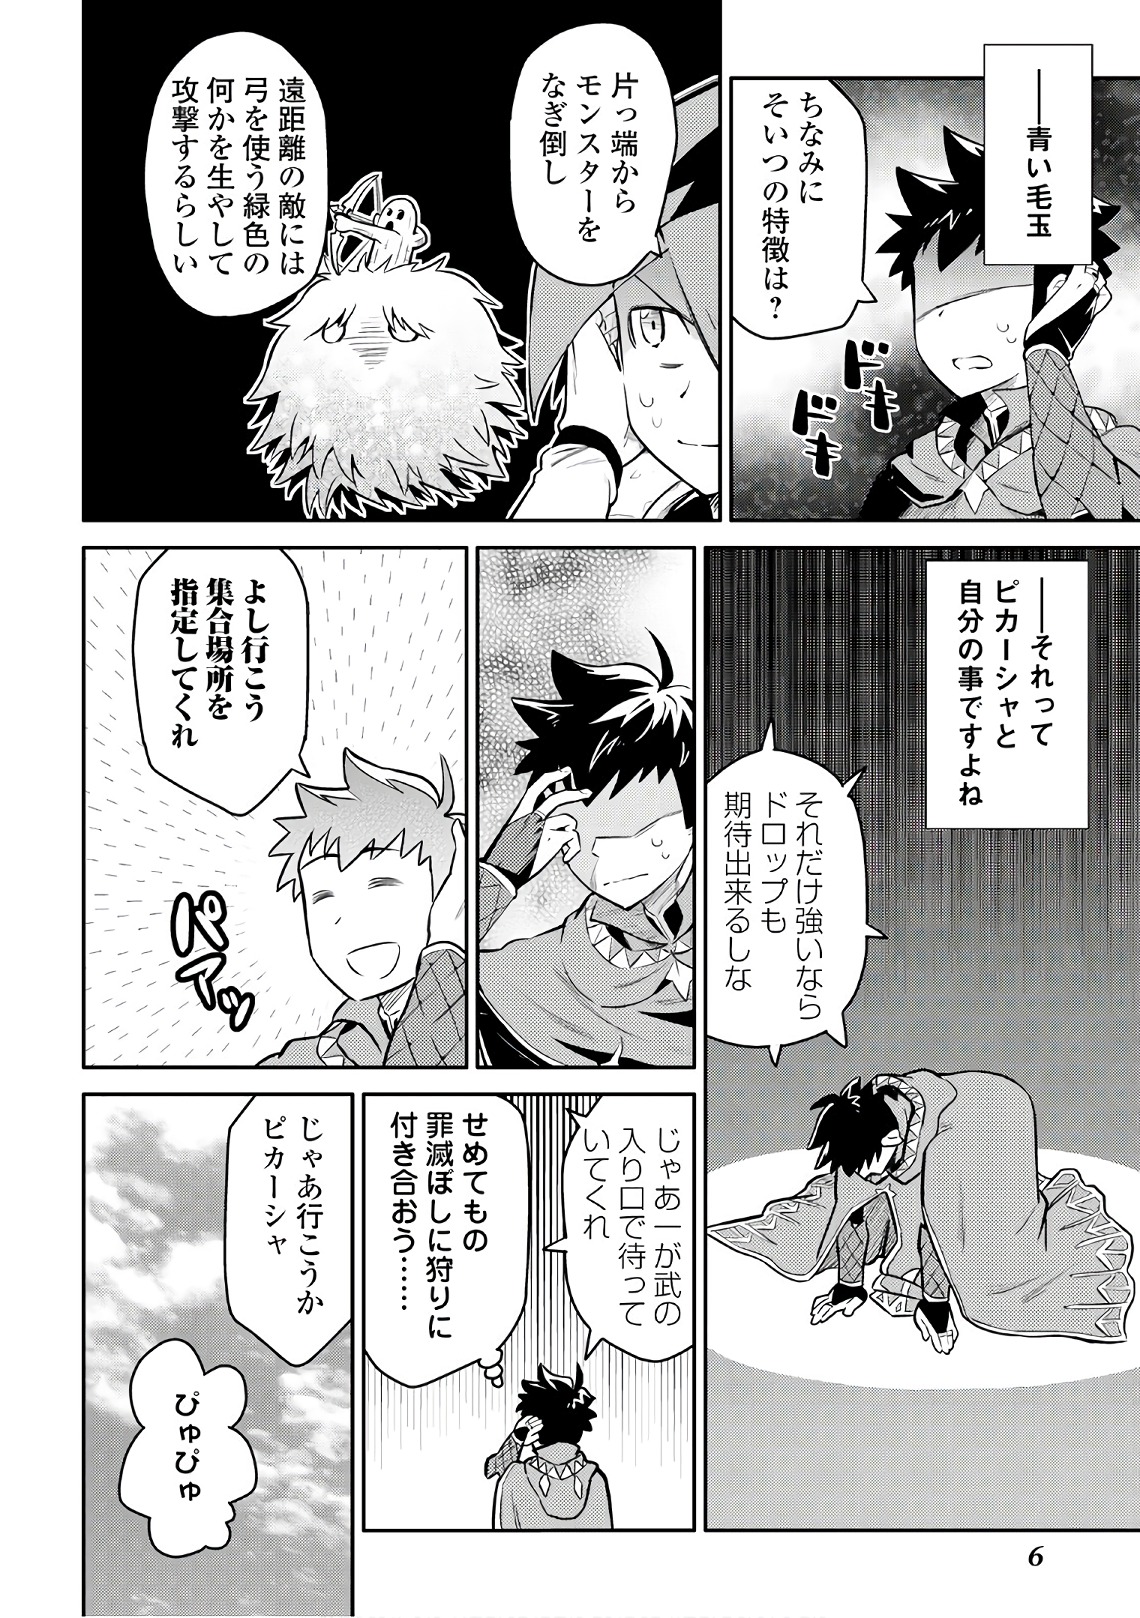 Toaru Ossan no VRMMO Katsudouki - Chapter 37 - Page 2